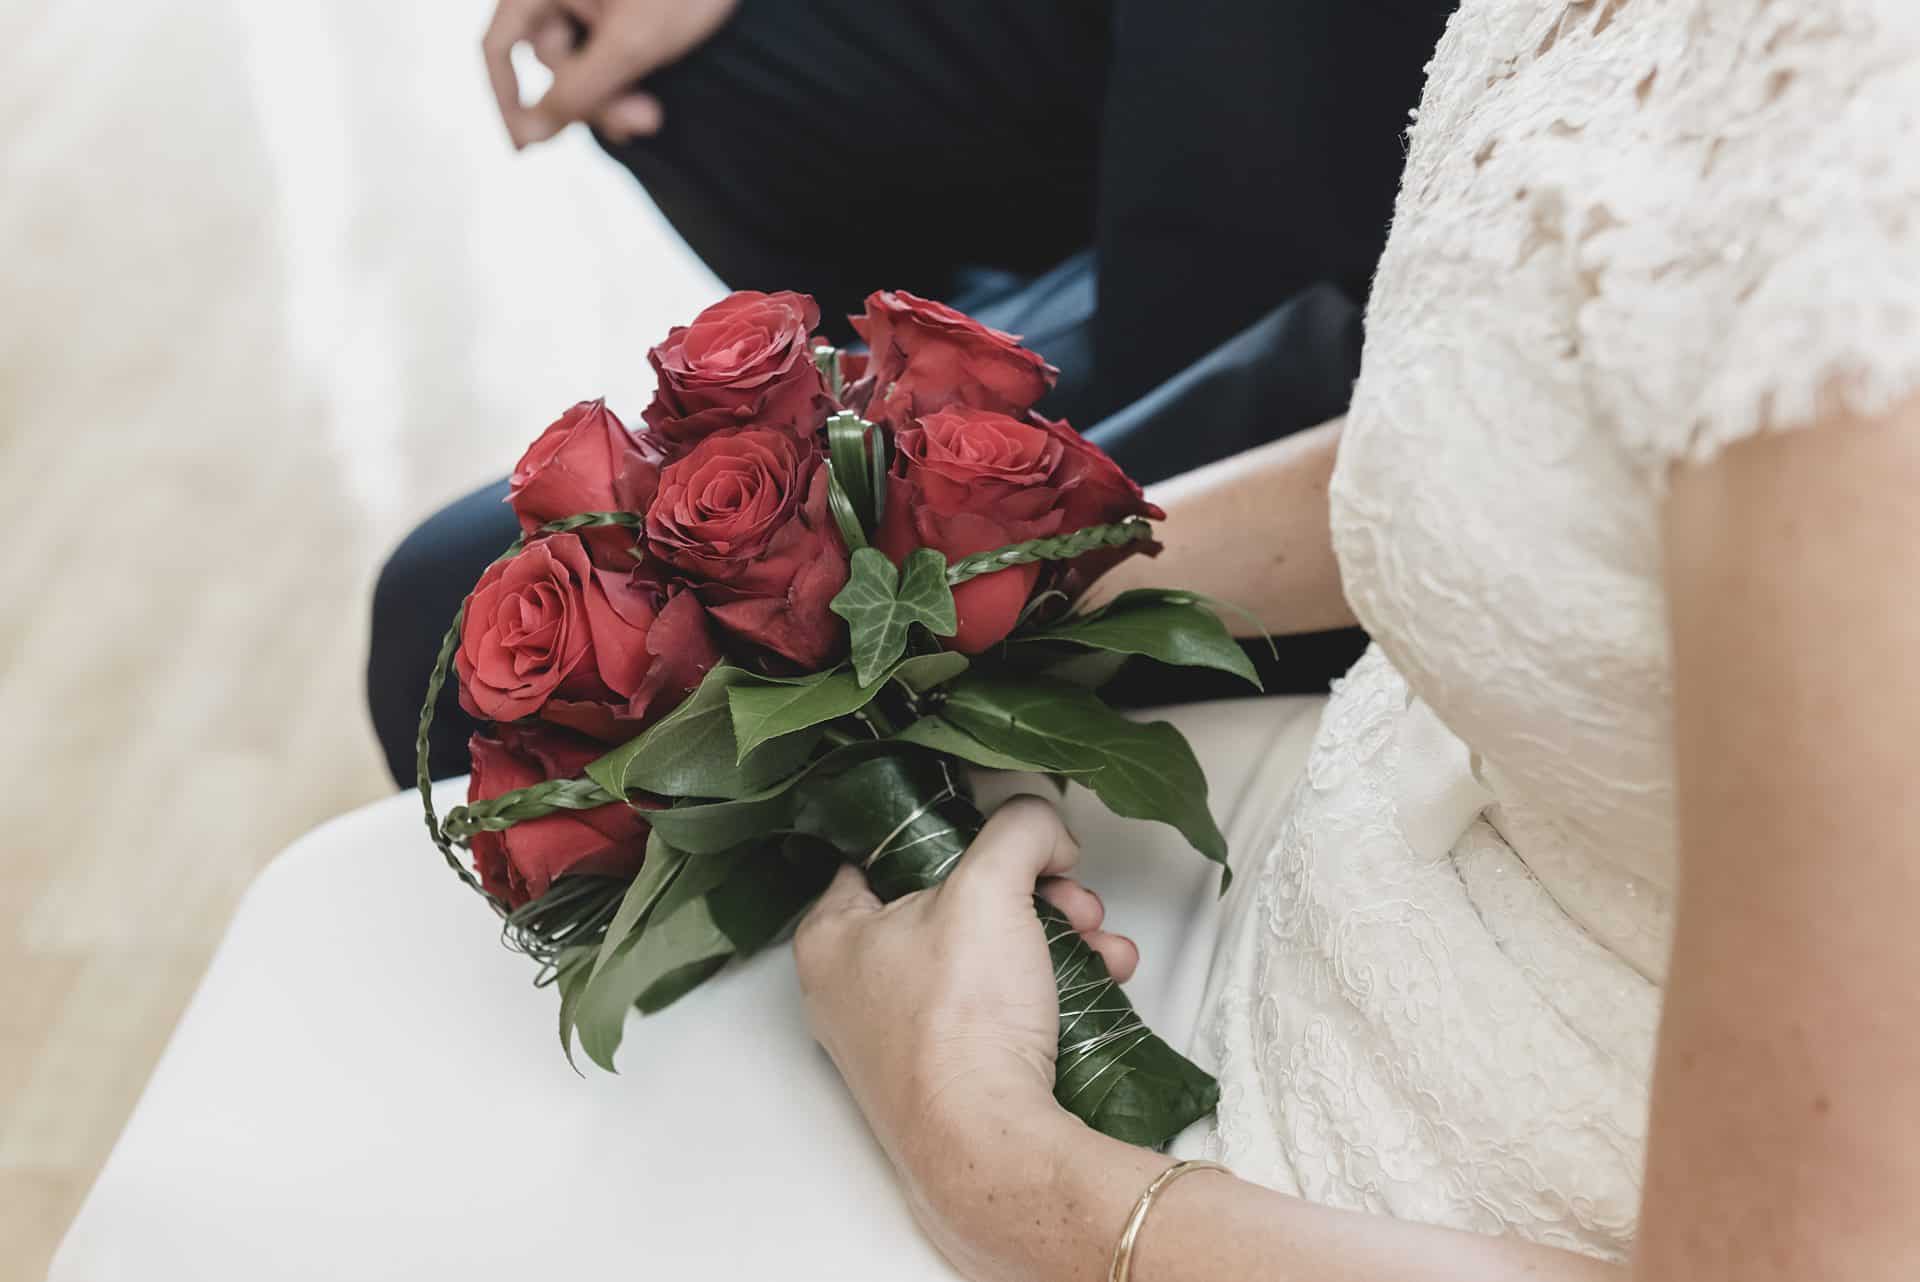 Eine Braut hält einen Strauß roter Rosen.